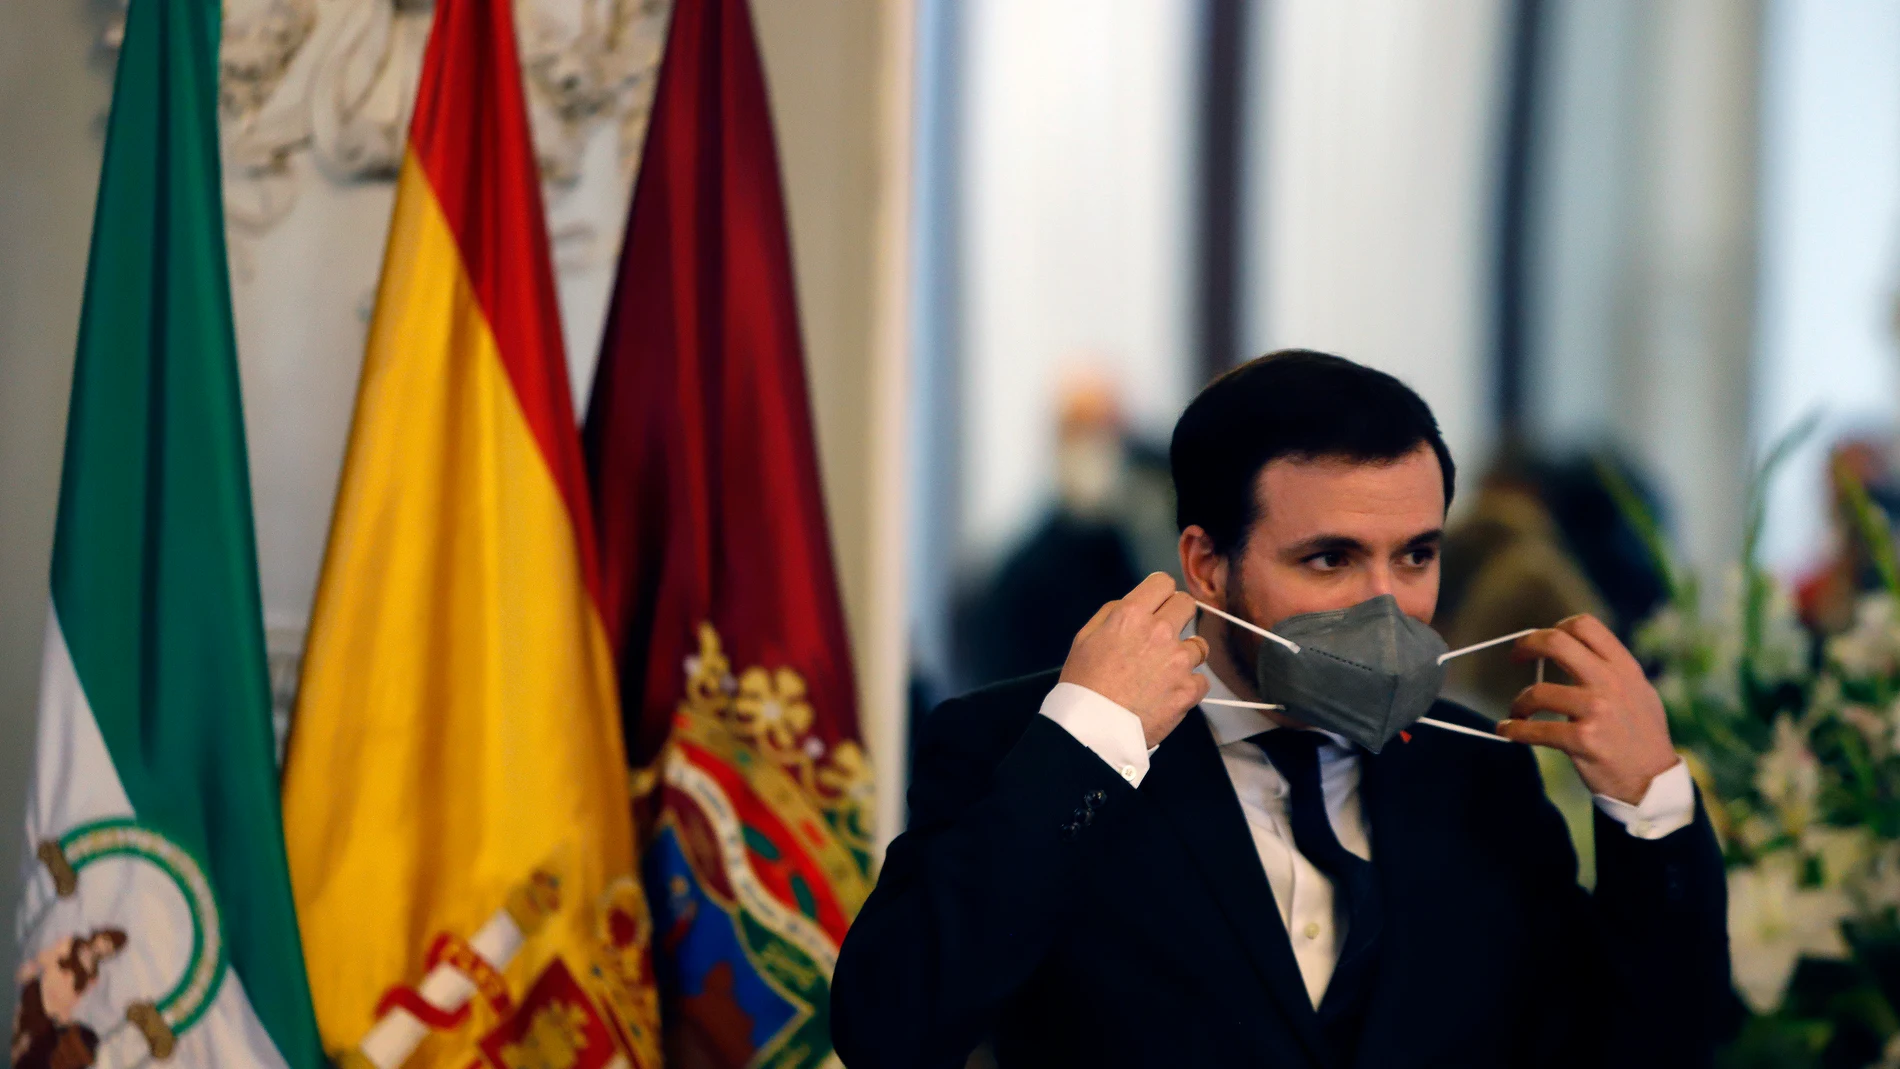 El ministro de Consumo, Alberto Garzón, se dirige al público asistente después de visitar el Ayuntamiento de Málaga